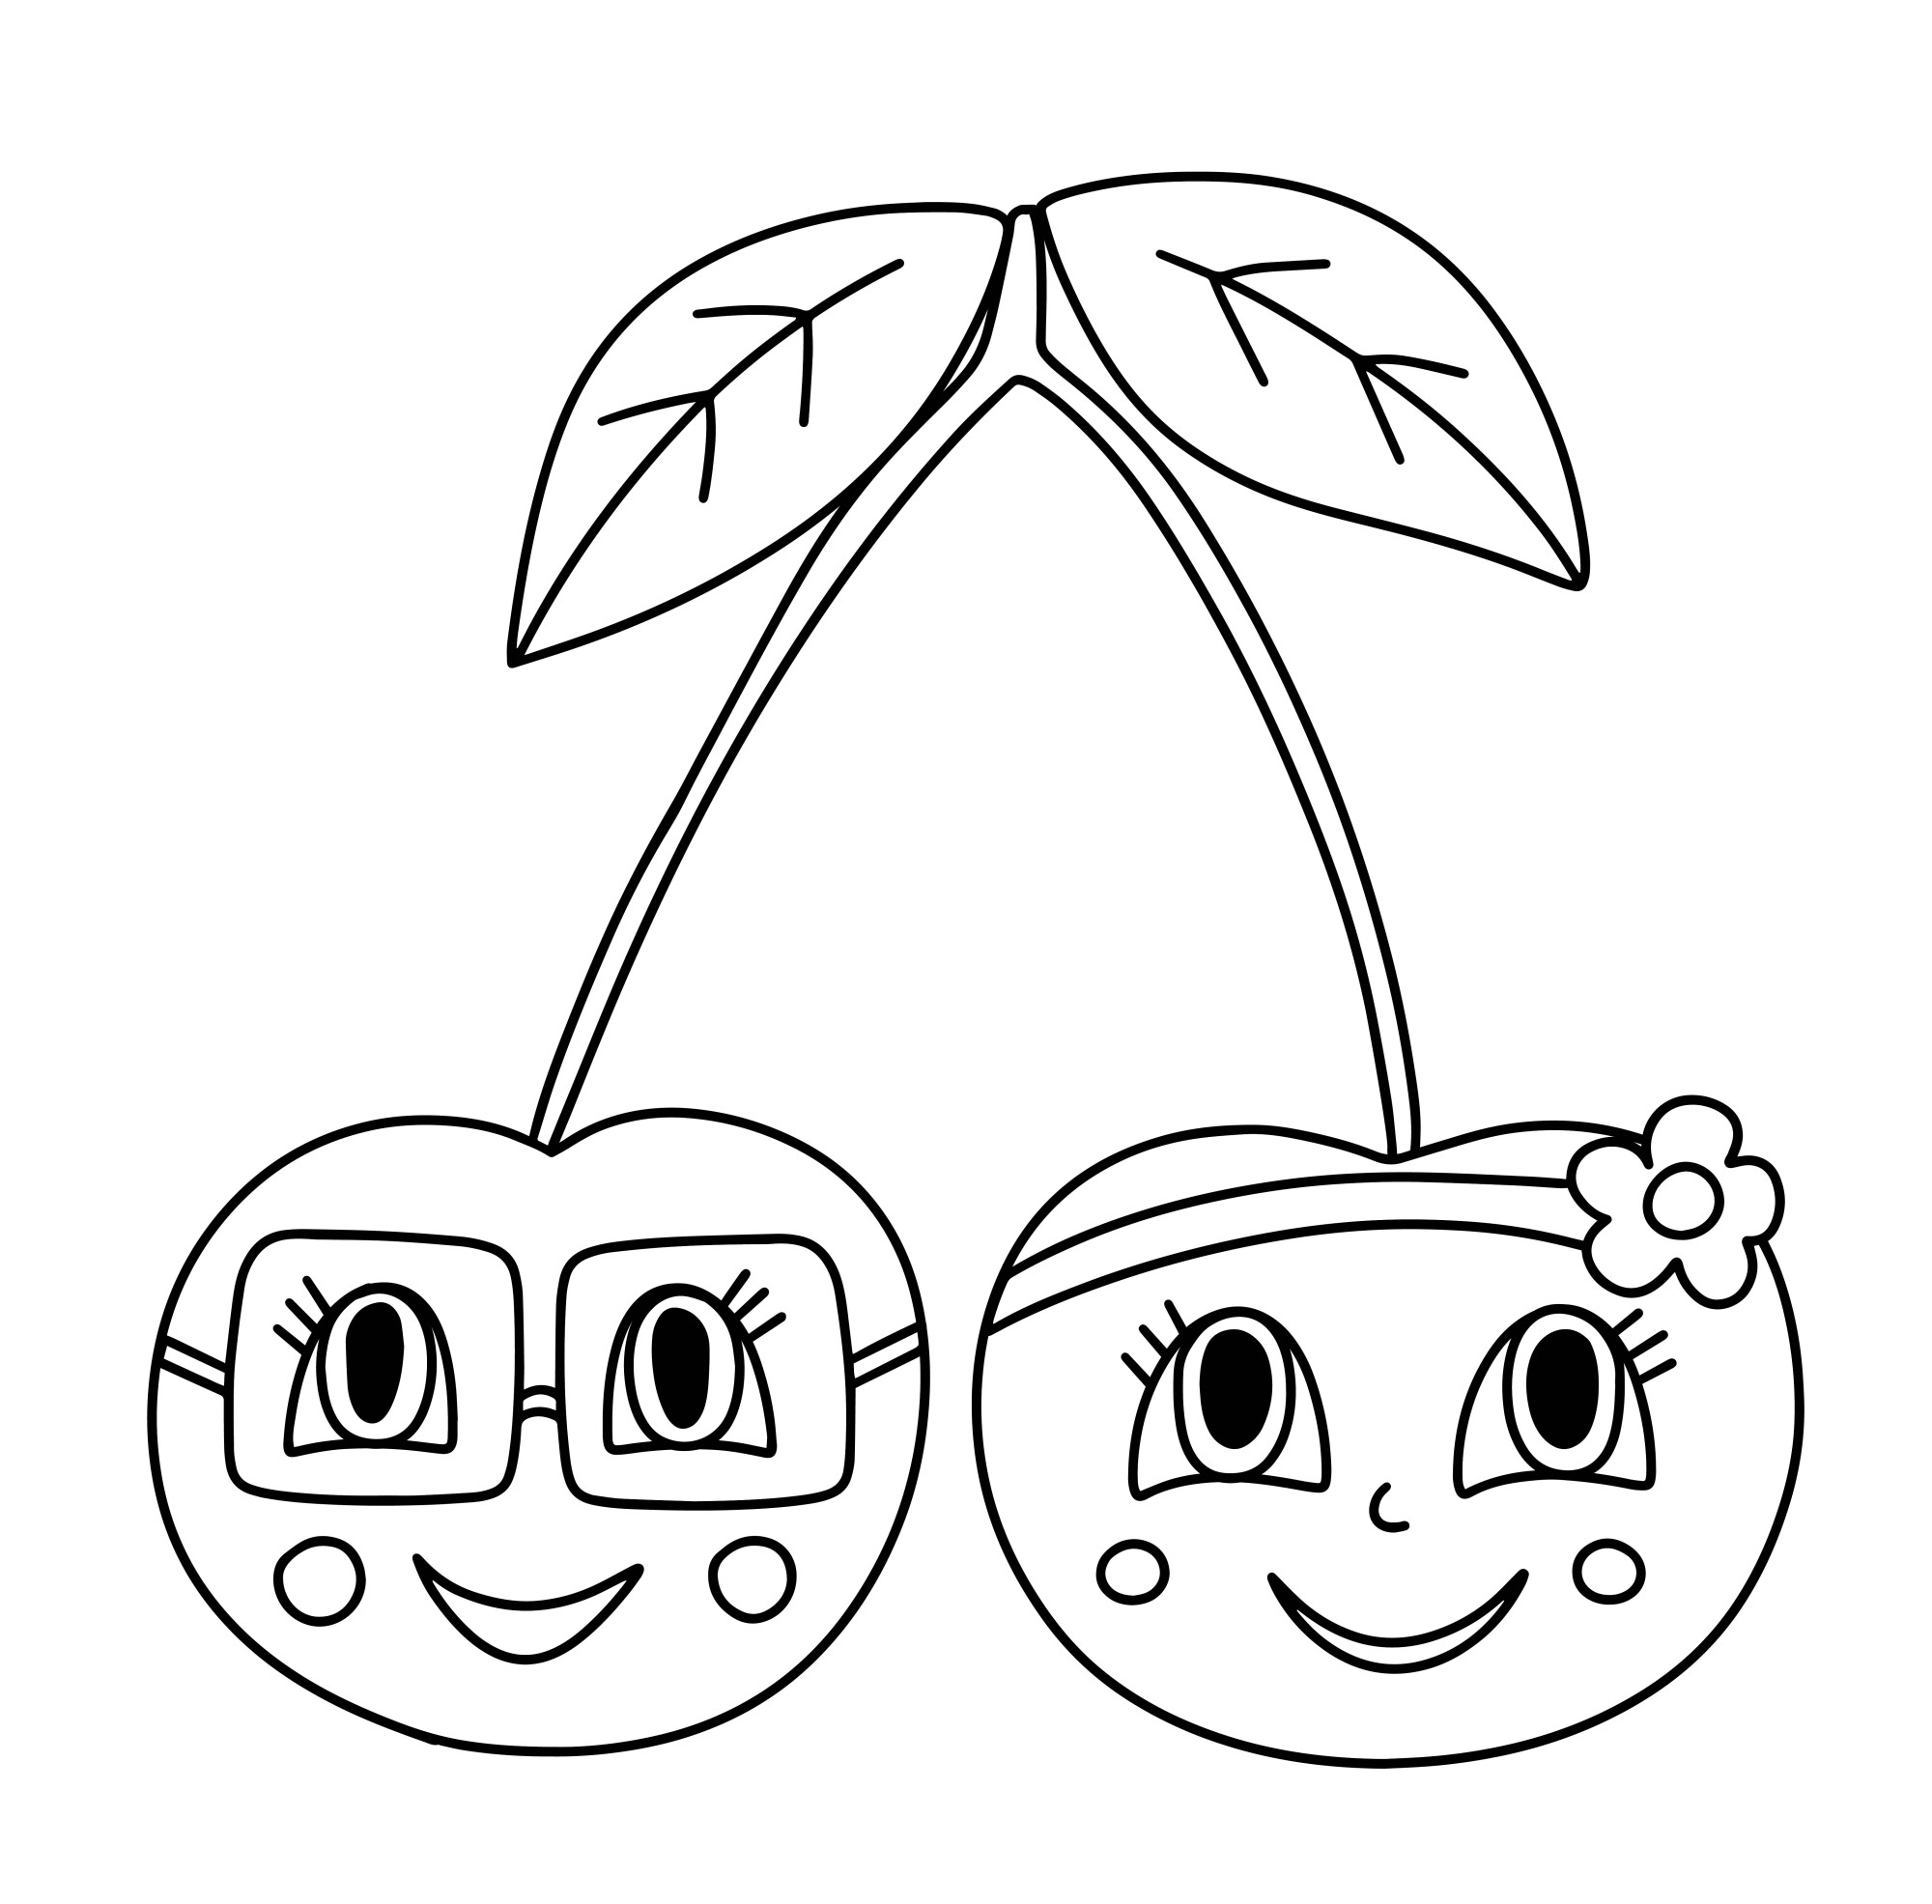 Раскраска для детей: мультяшные ягоды вишни с лицами